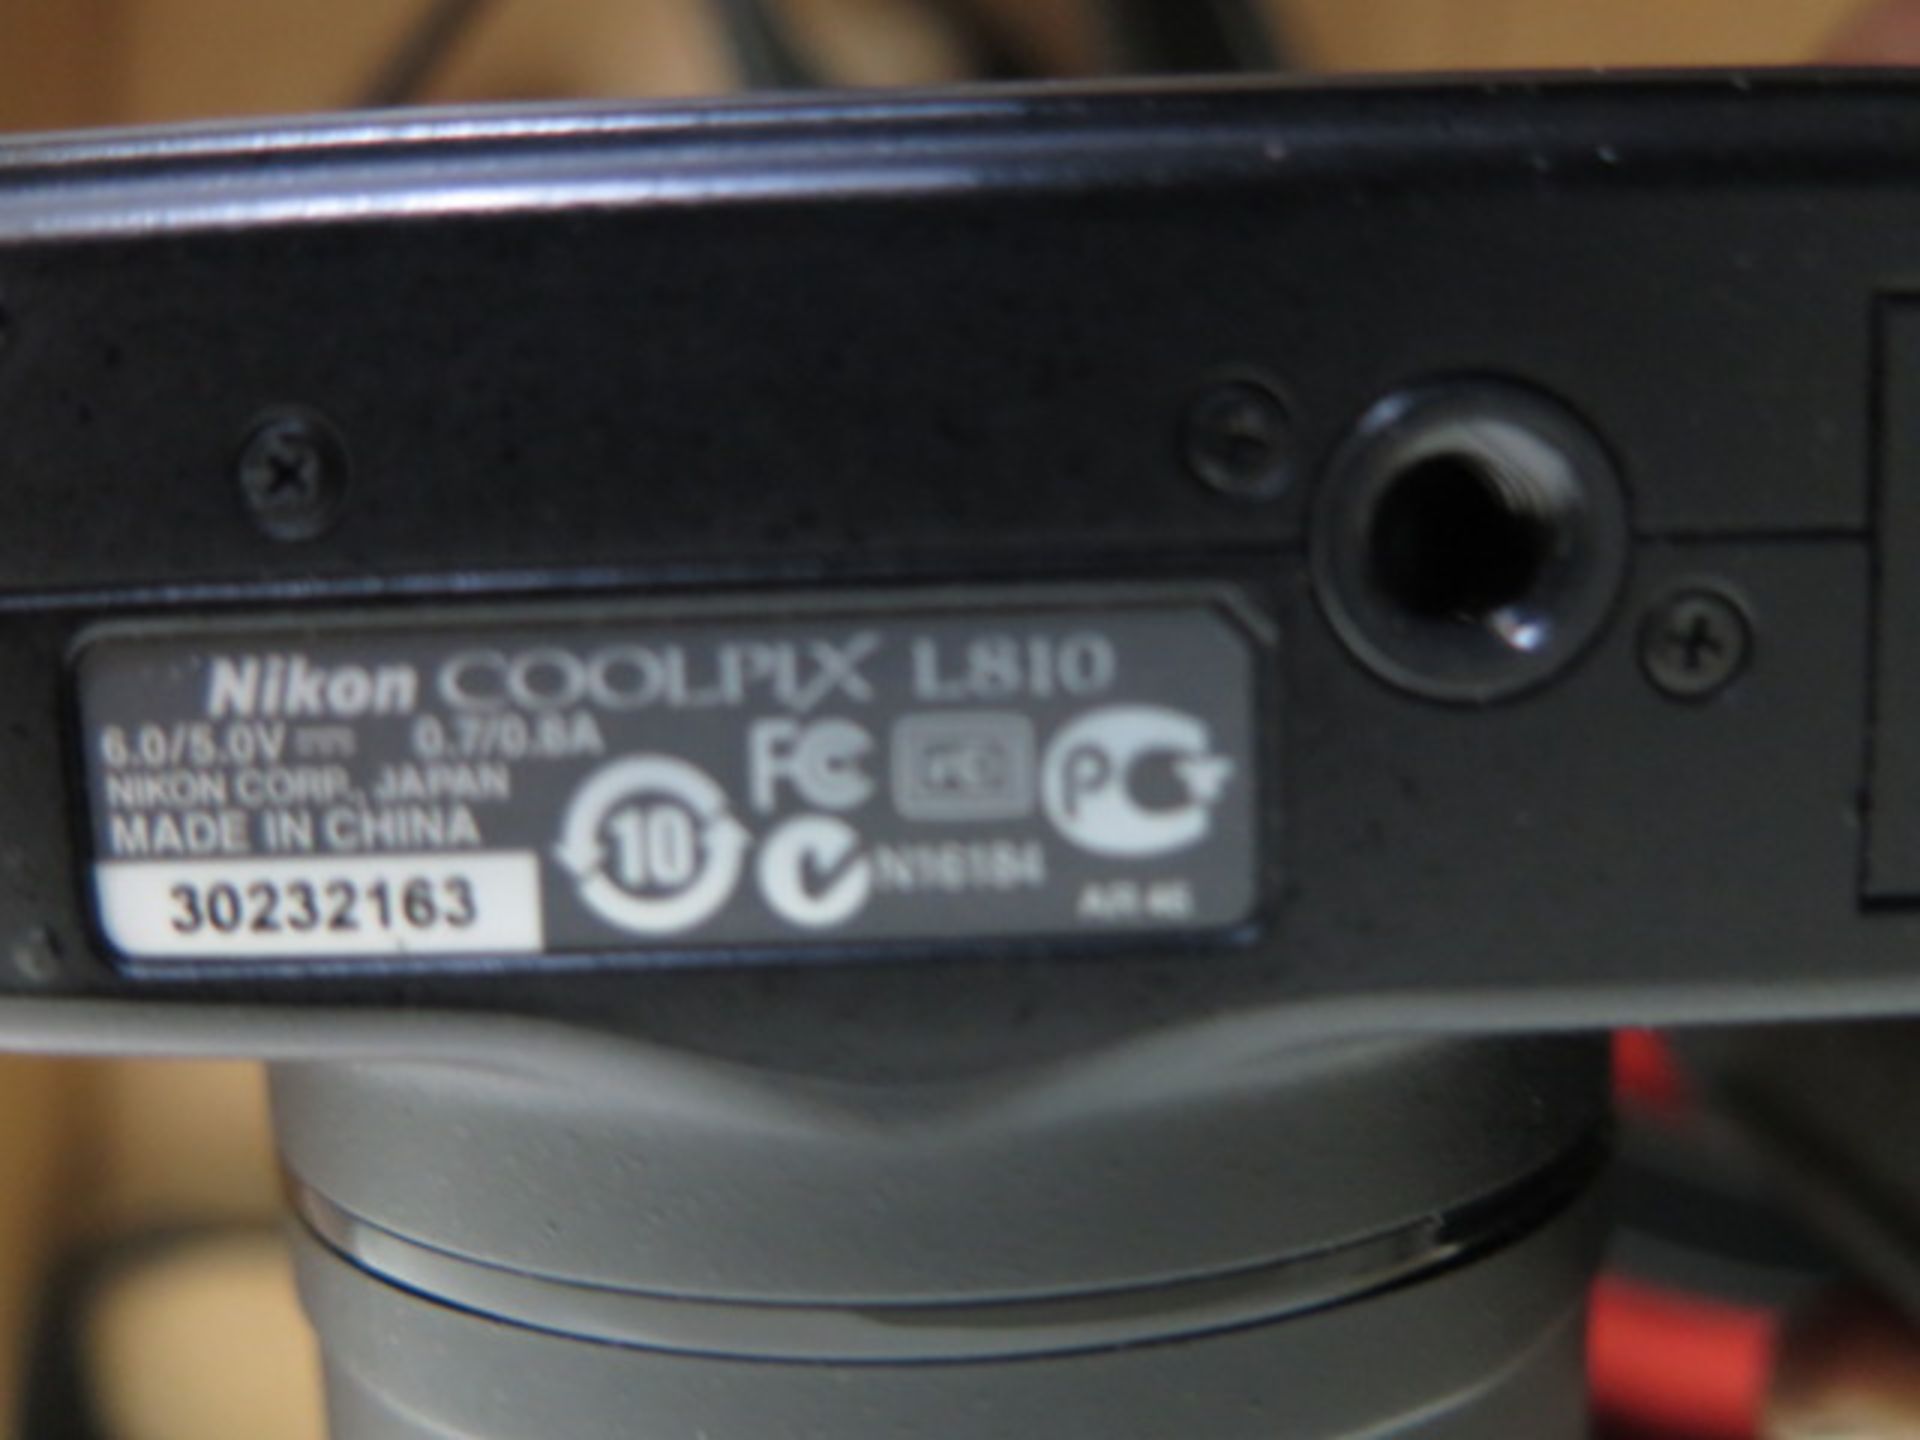 Nikon Coolpix L810 Digital Camera - Image 3 of 3